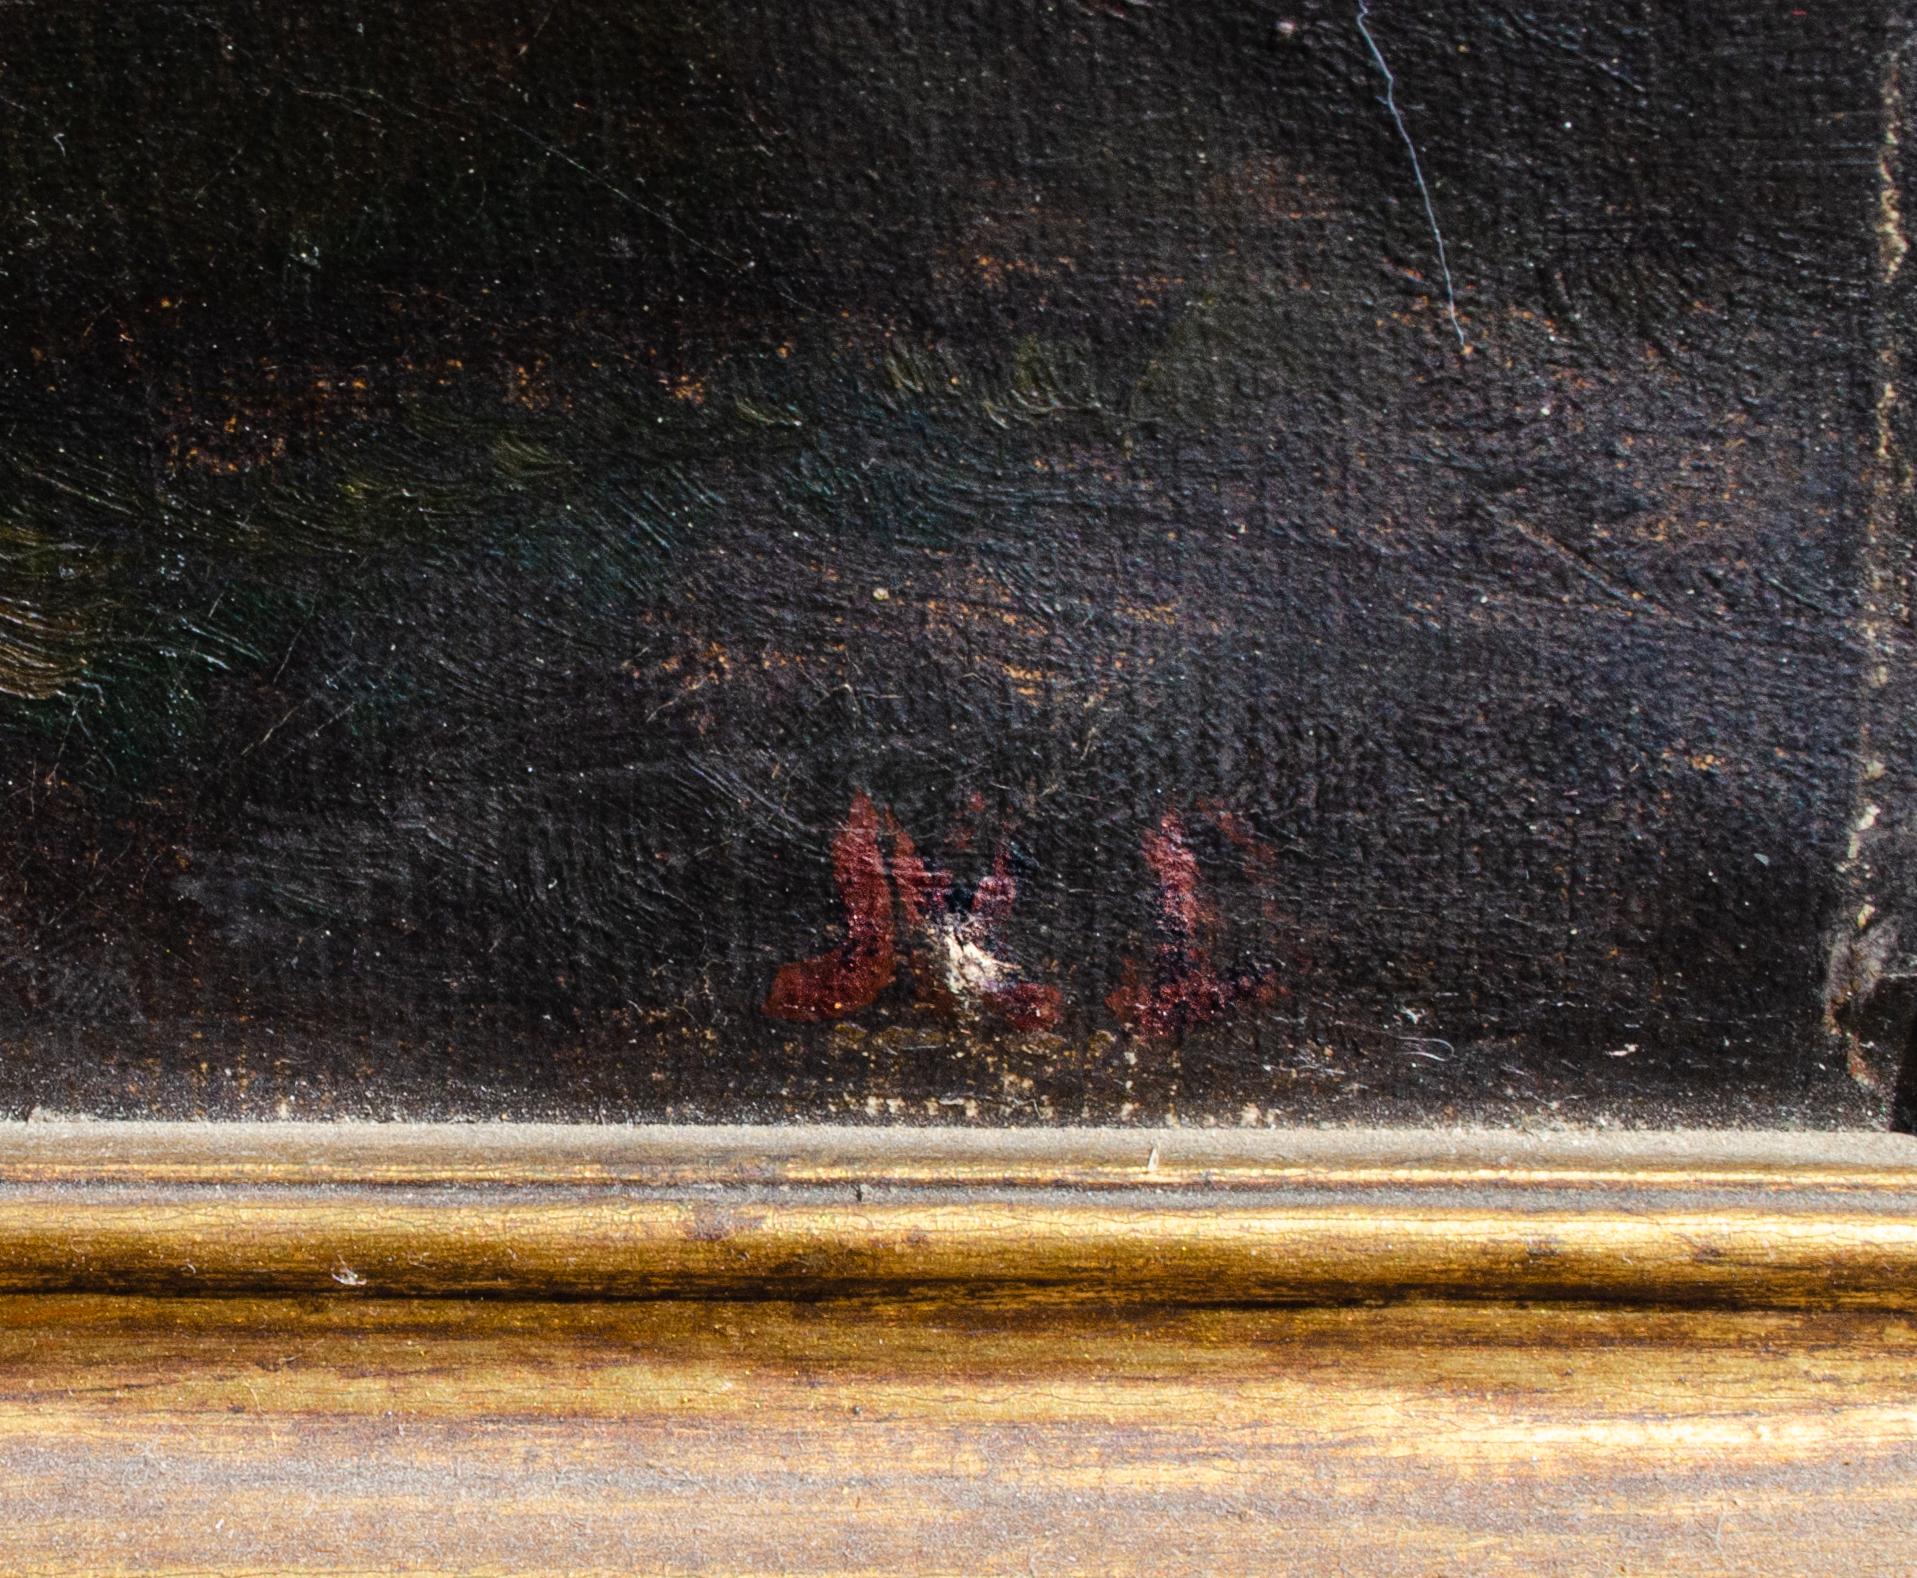 Paire de portraits sans titre, C.I.C. fin du 19e siècle
Huile sur toile
20 x 16 in.
Encadré : 22 x 19 1/4 x 1 in.
Une peinture paraphée en bas à droite
Toutes deux portent une inscription au verso sur le châssis
